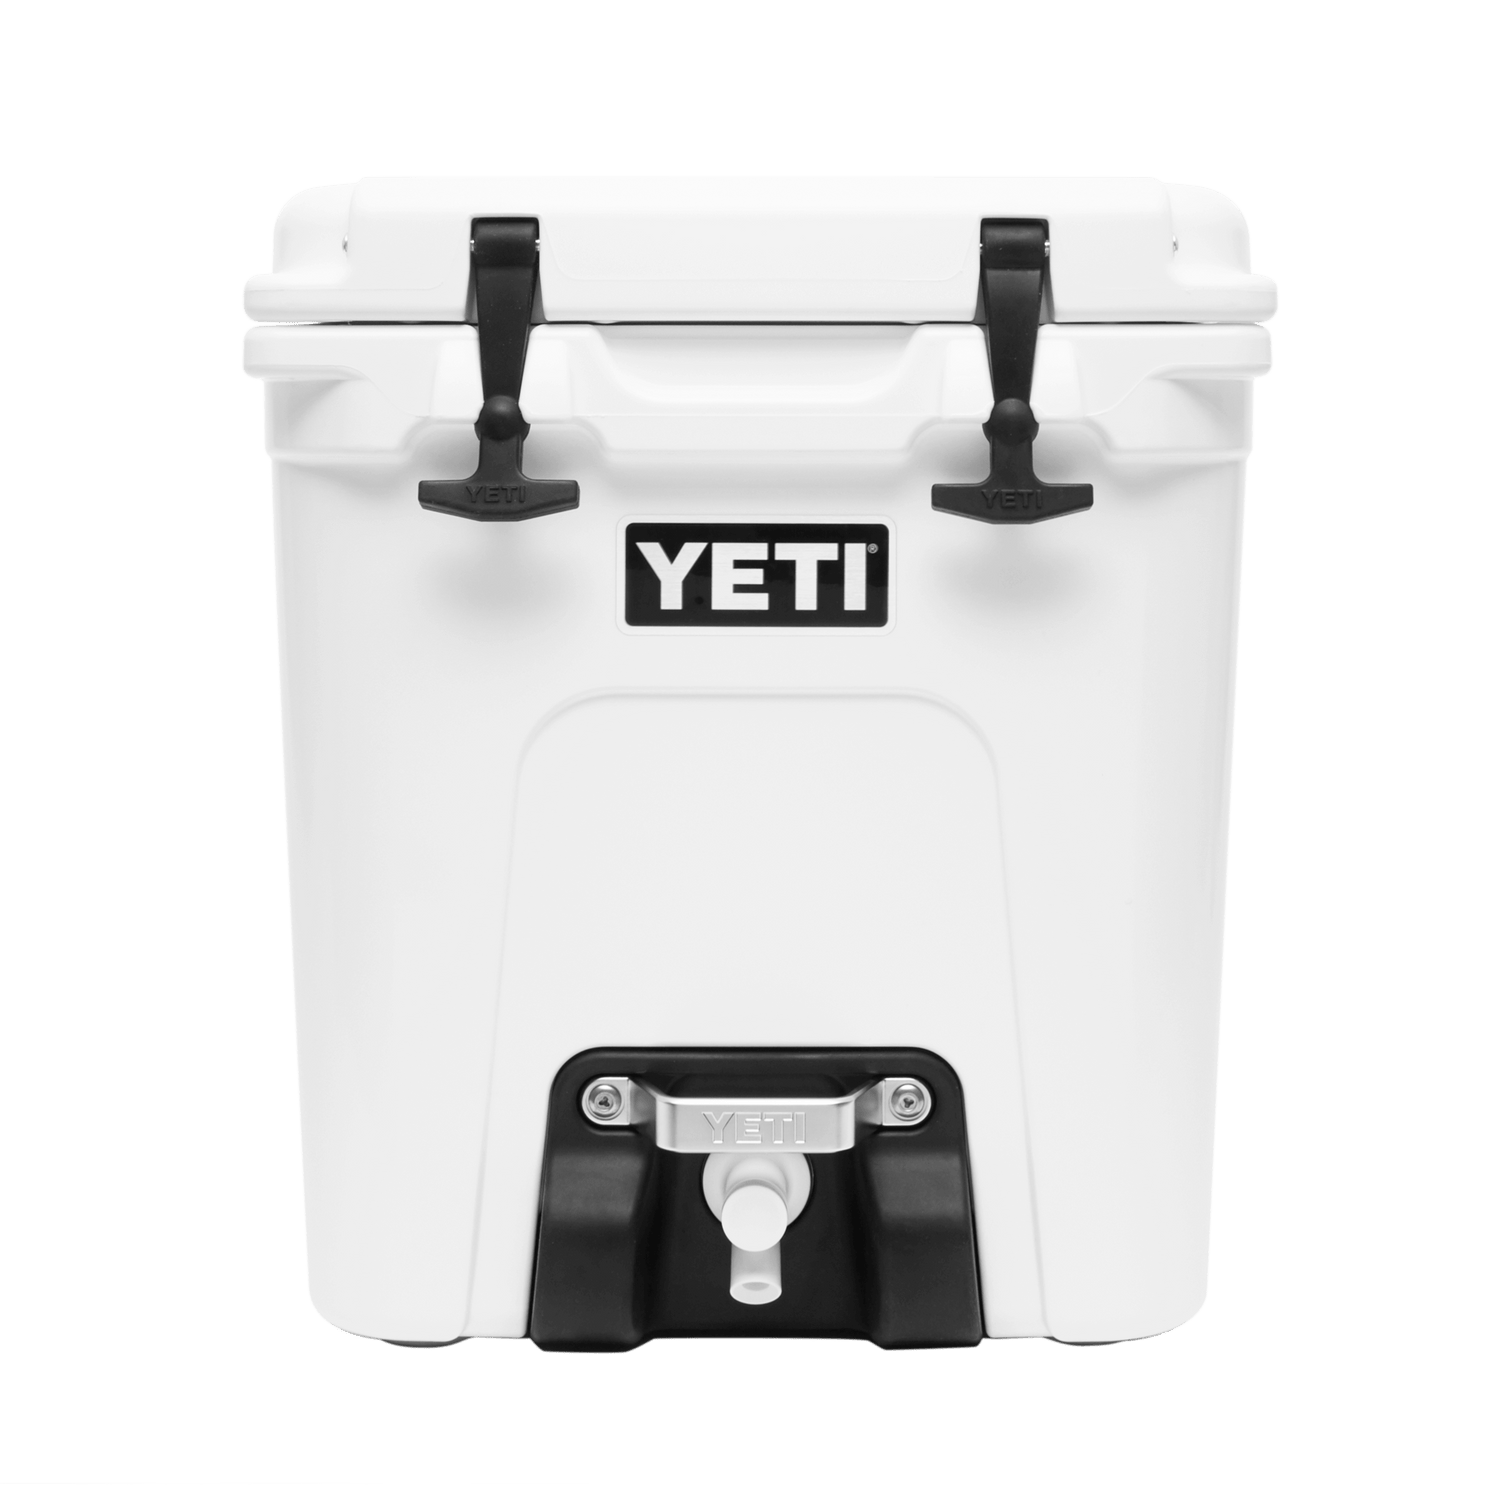 YETI® Tundra 65 Cool Box – YETI EUROPE